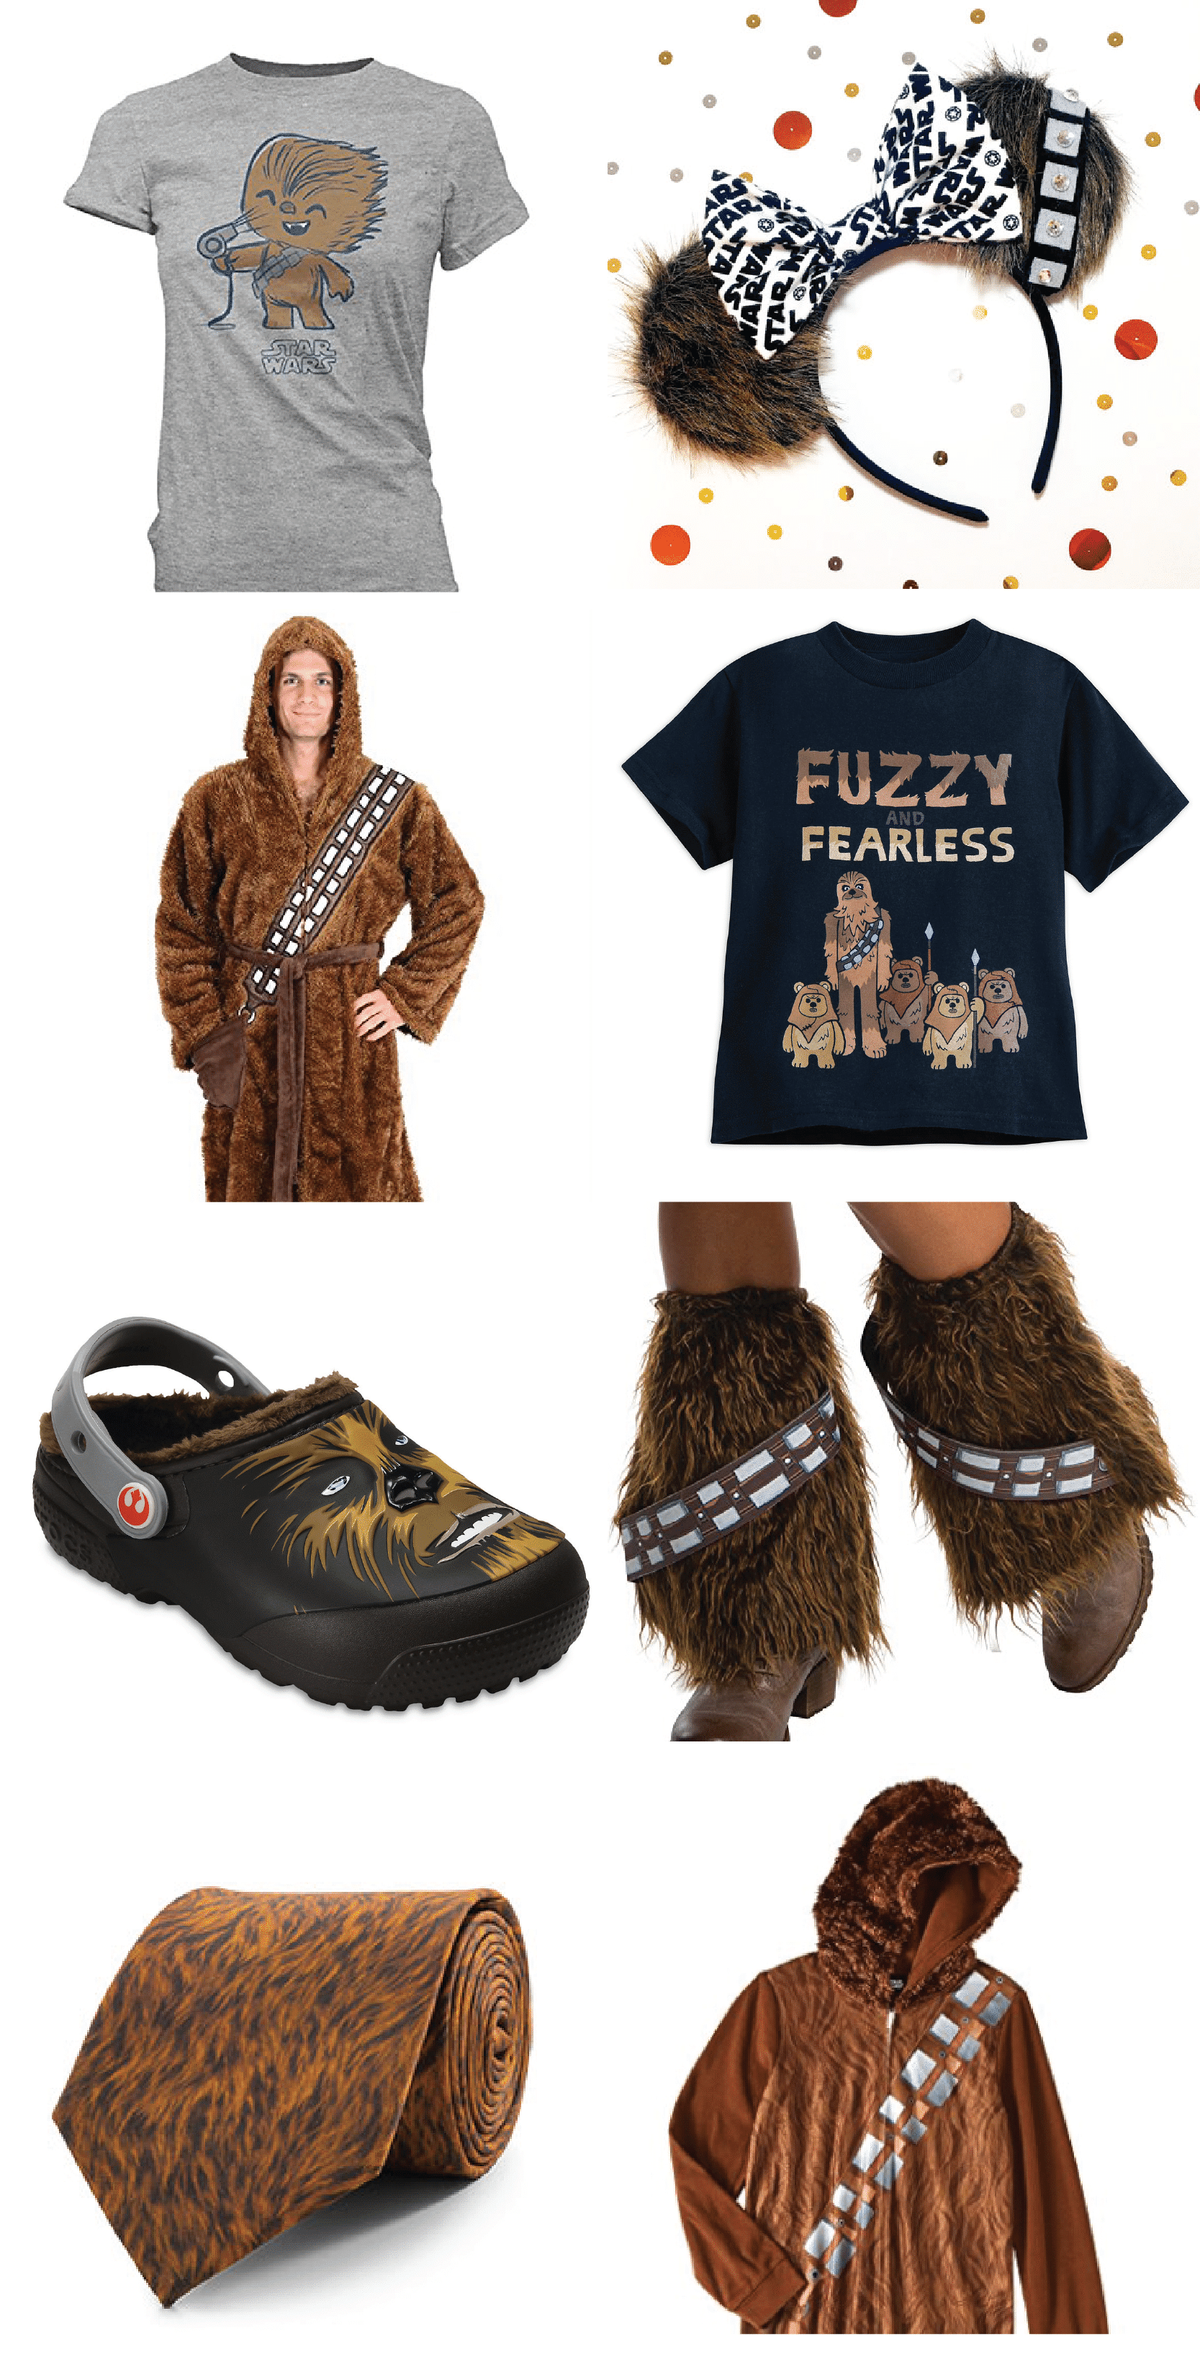 Χρειάζεστε δώρο Star Wars για να κάνετε ένα πάρτι; Αυτά τα προϊόντα εμπνευσμένα από την Chewbacca είναι μερικά από τα καλύτερα δώρα γενεθλίων, ρούχα Star Wars ή πραγματικά απλά προϊόντα για άτομα που αγαπούσαν το The Last Jedi